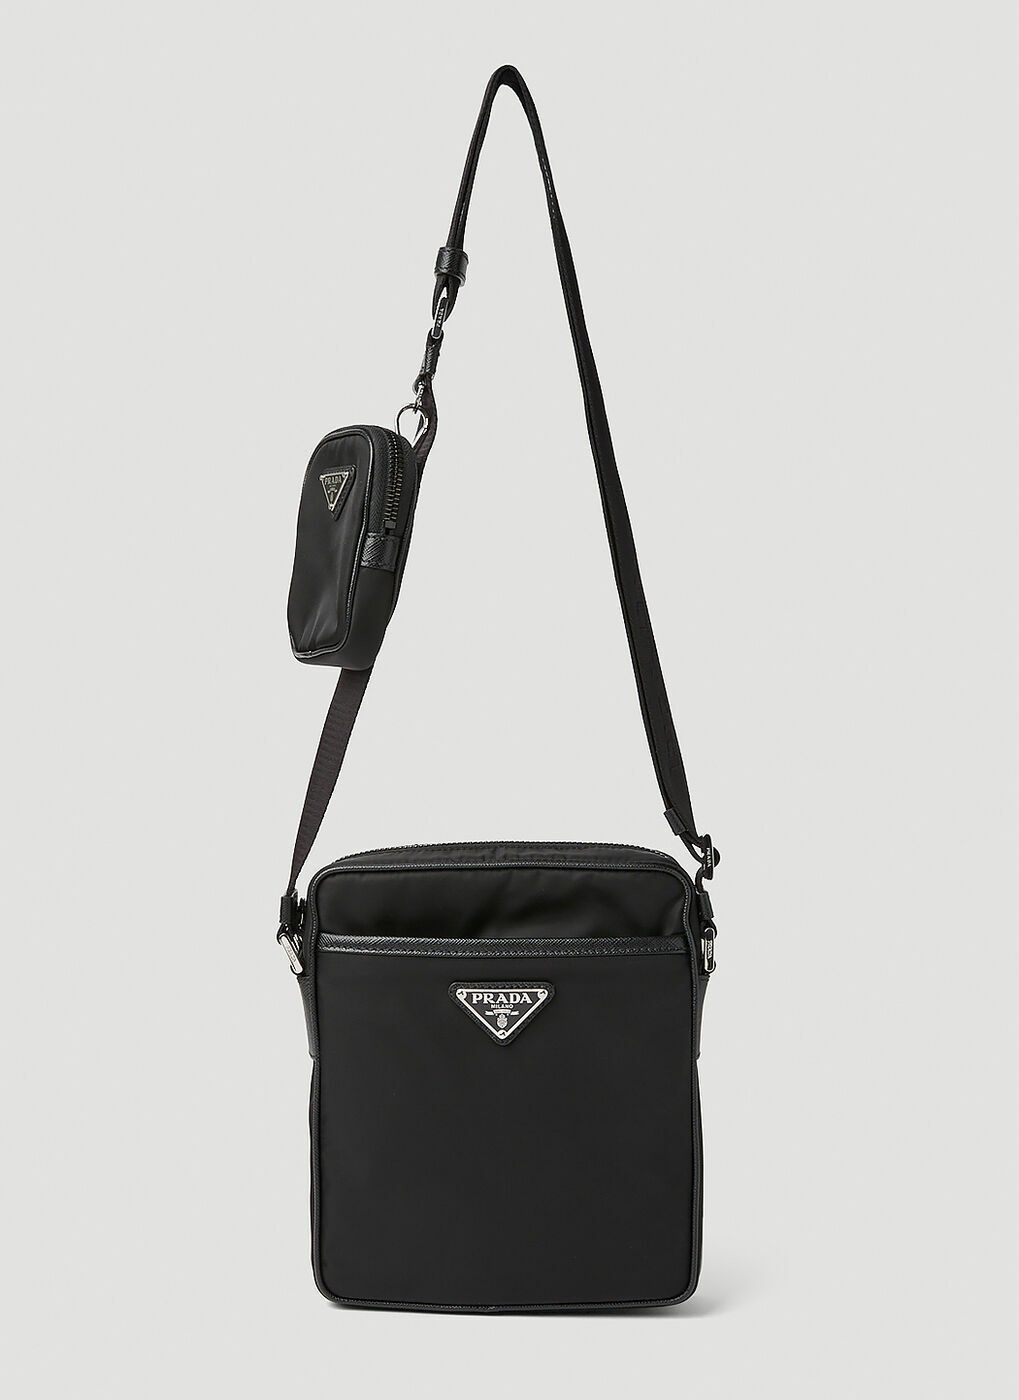 Prada Men's Nylon and Saffiano Crossbody Bag